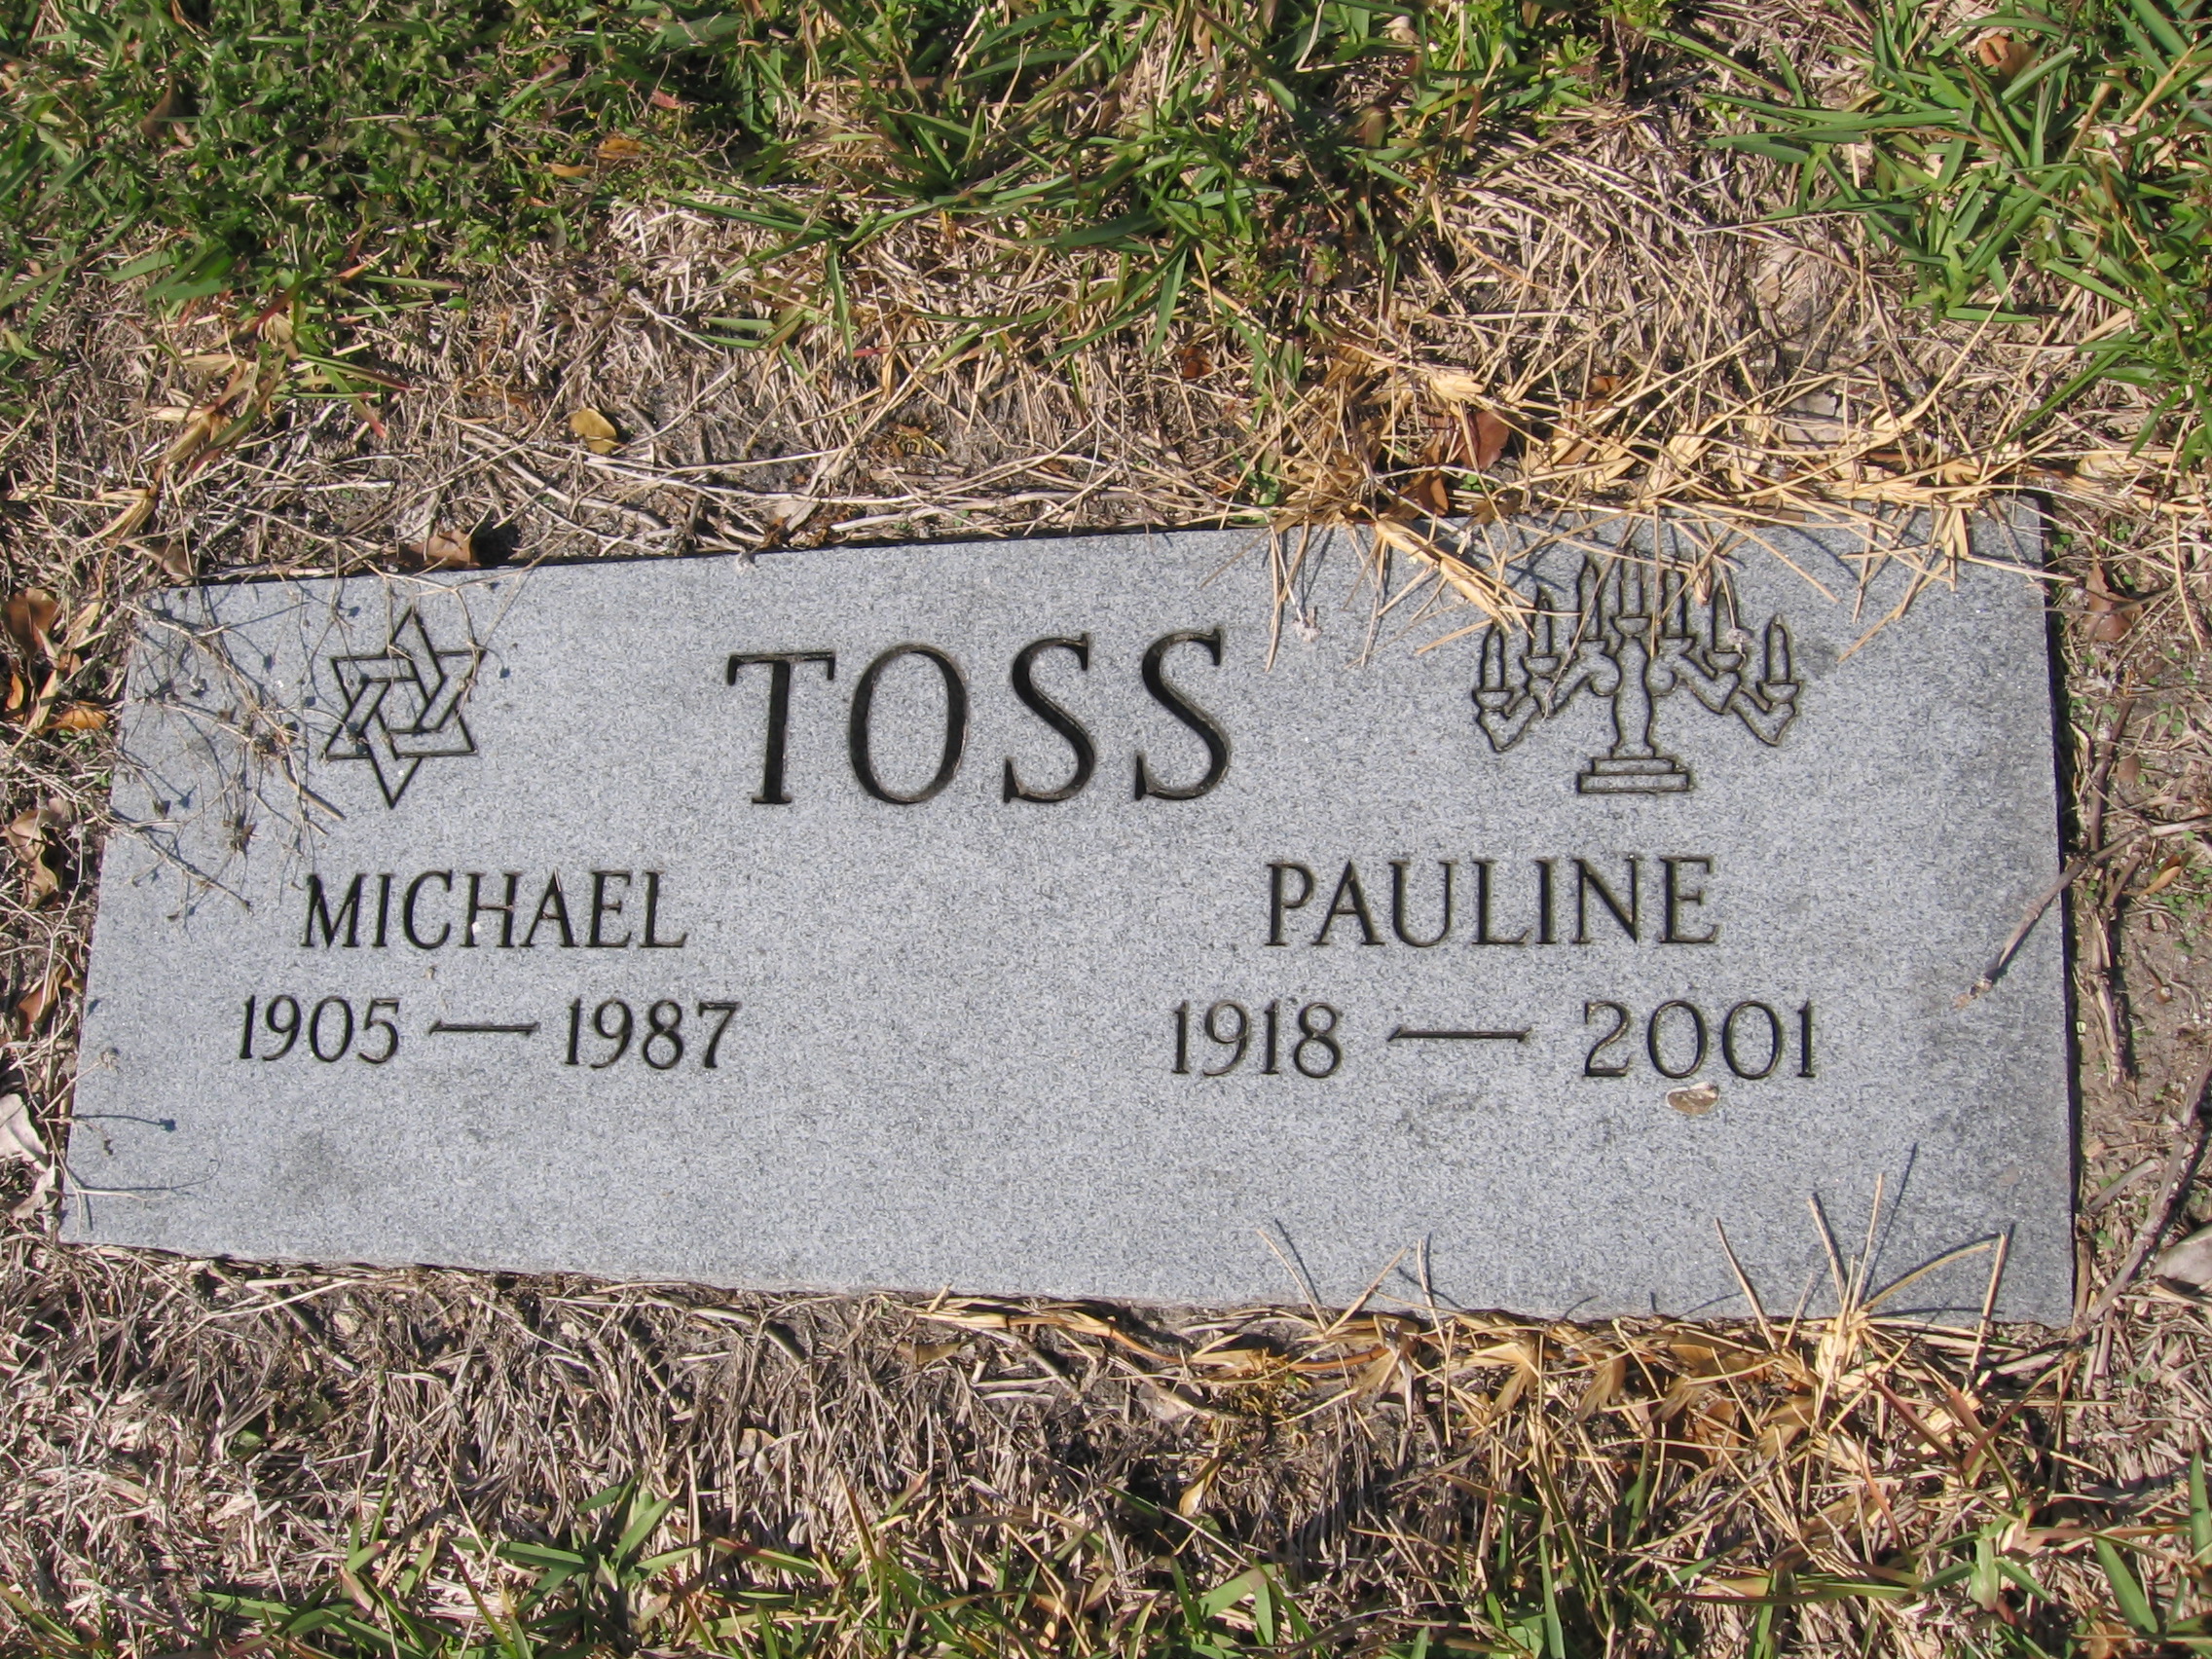 Michael Toss